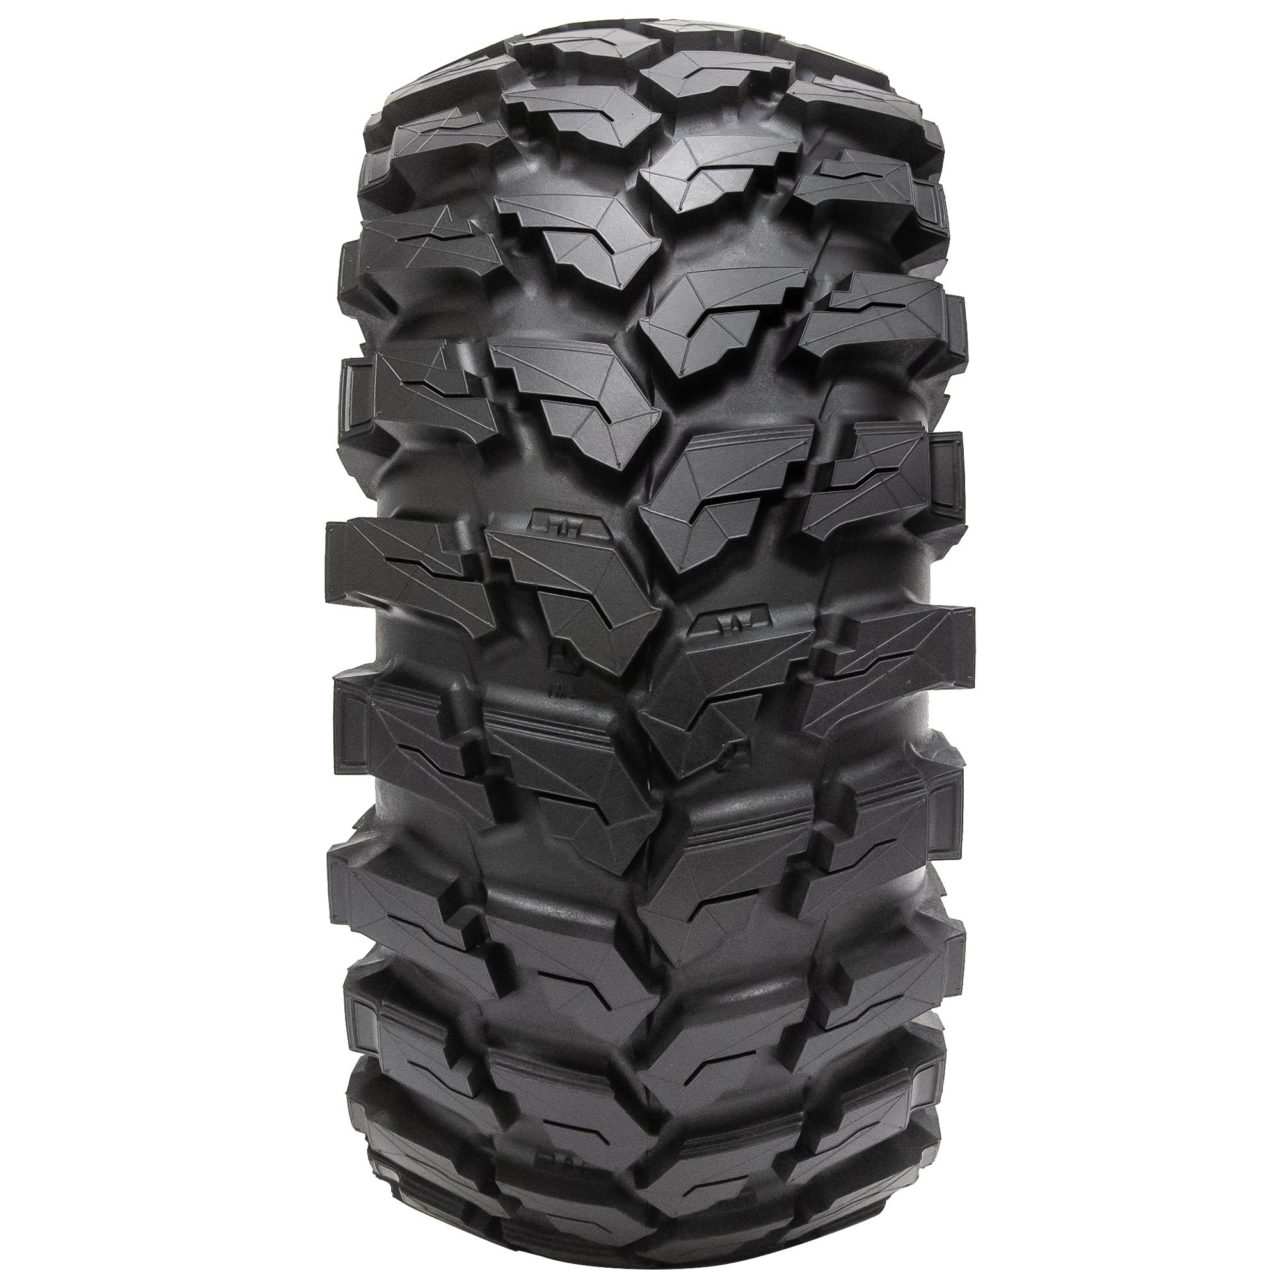 MU512 SxS tire product image